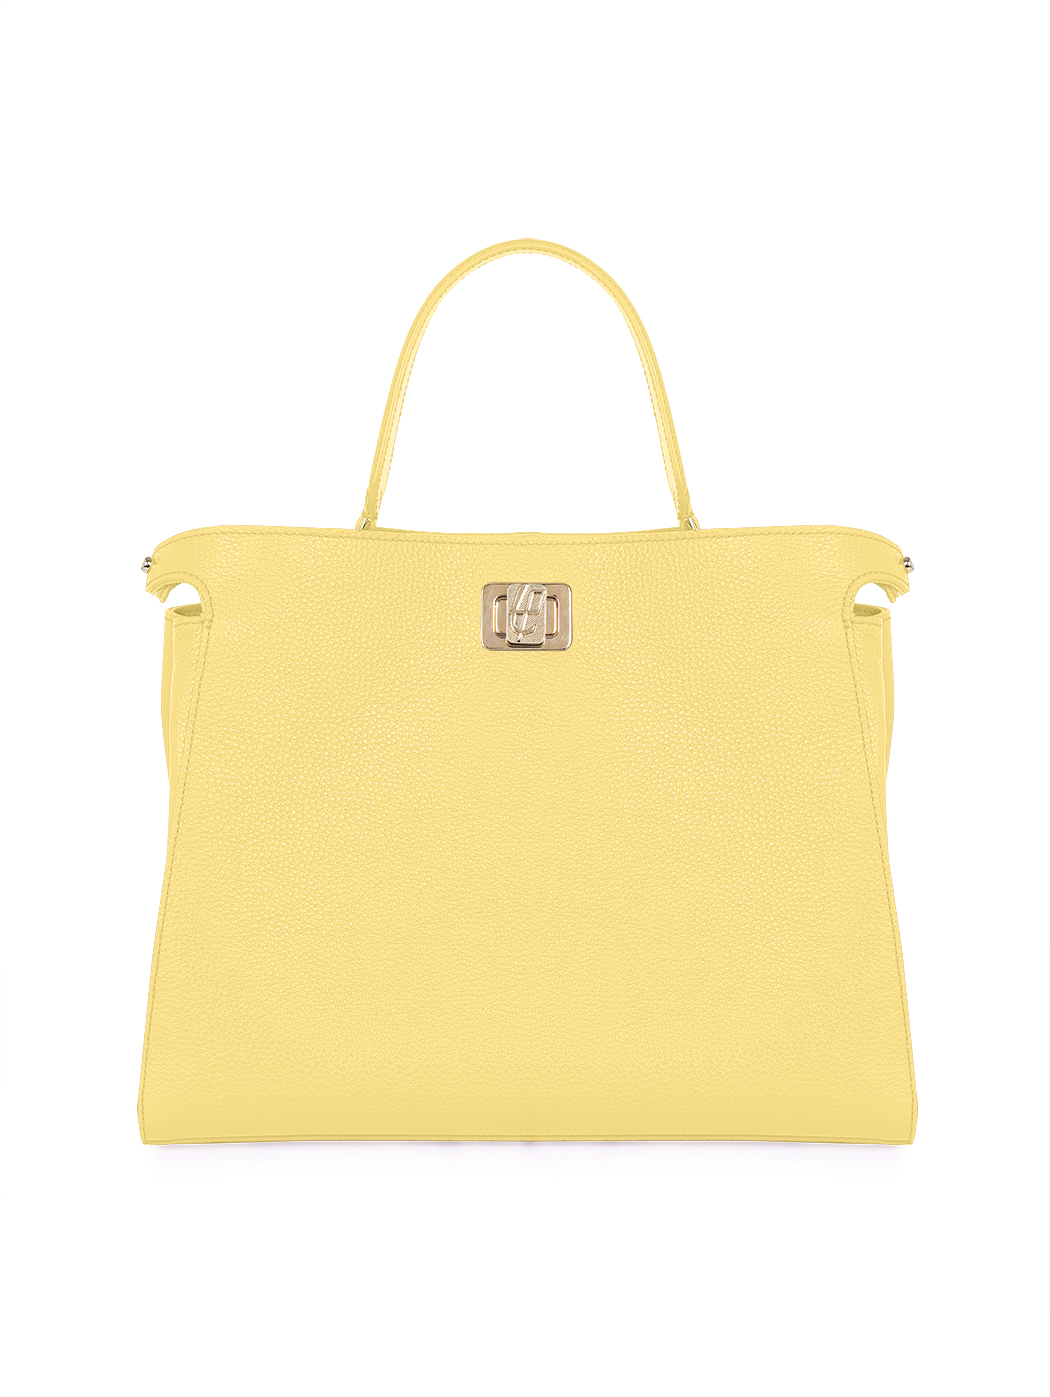 Top Handle Turnlock Handbag Rita Lemon Yellow